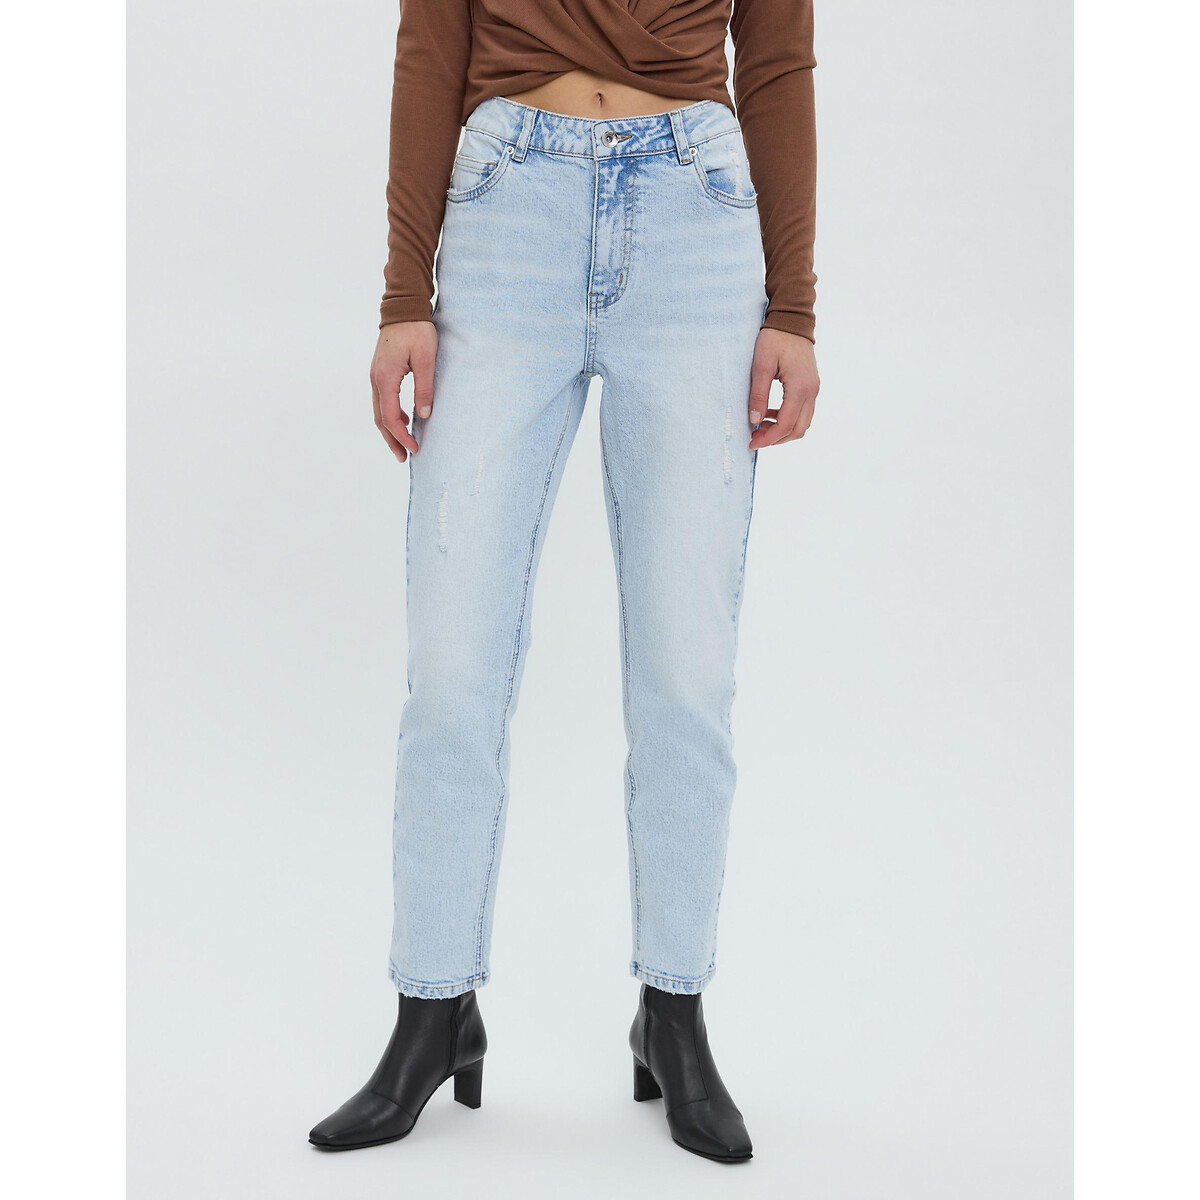 Gerade Jeans, hoher Bund von Vero Moda